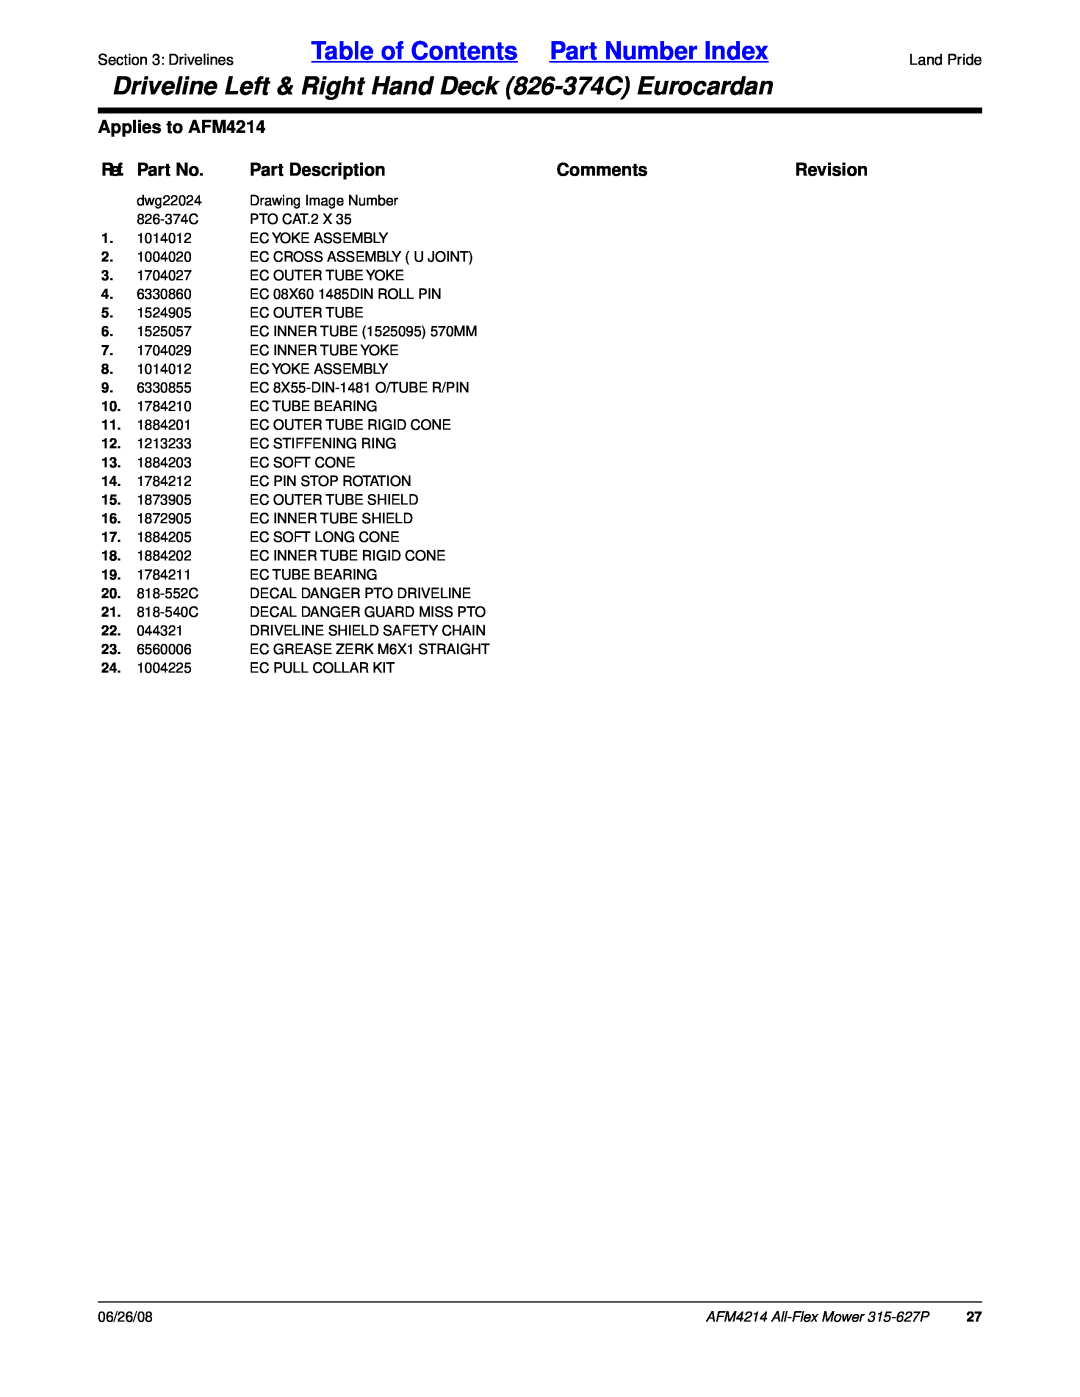 Land Pride Table of Contents Part Number Index, Applies to AFM4214, Ref. Part No, Part Description, Comments, Revision 